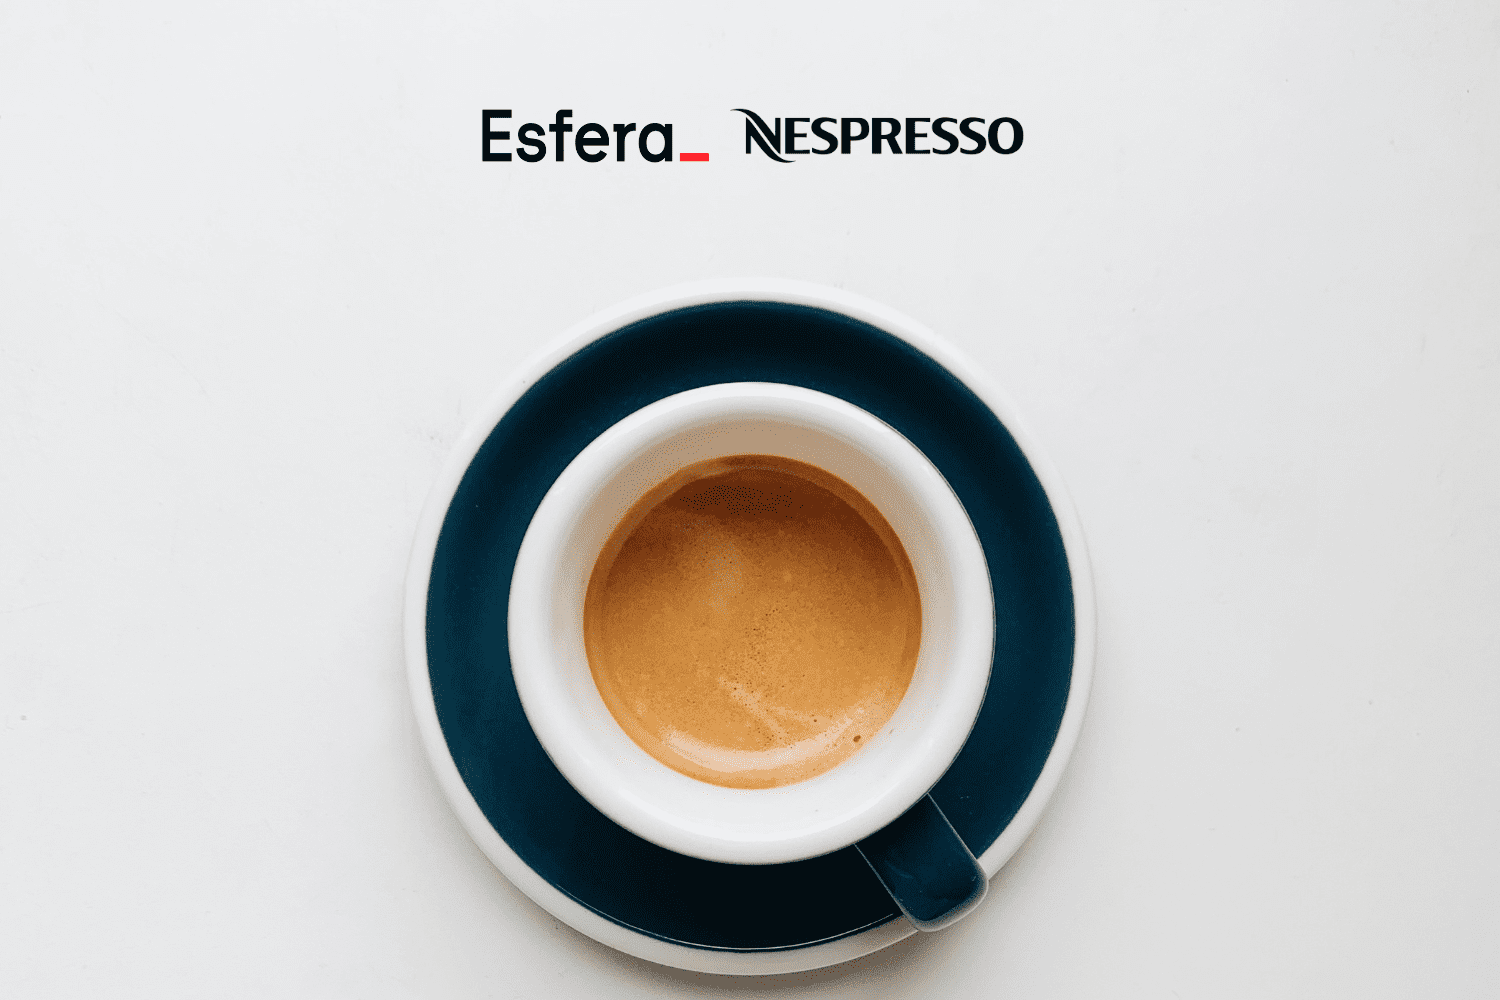 xícara de café expresso com logo Esfera e Nespresso 7 pontos Esfera